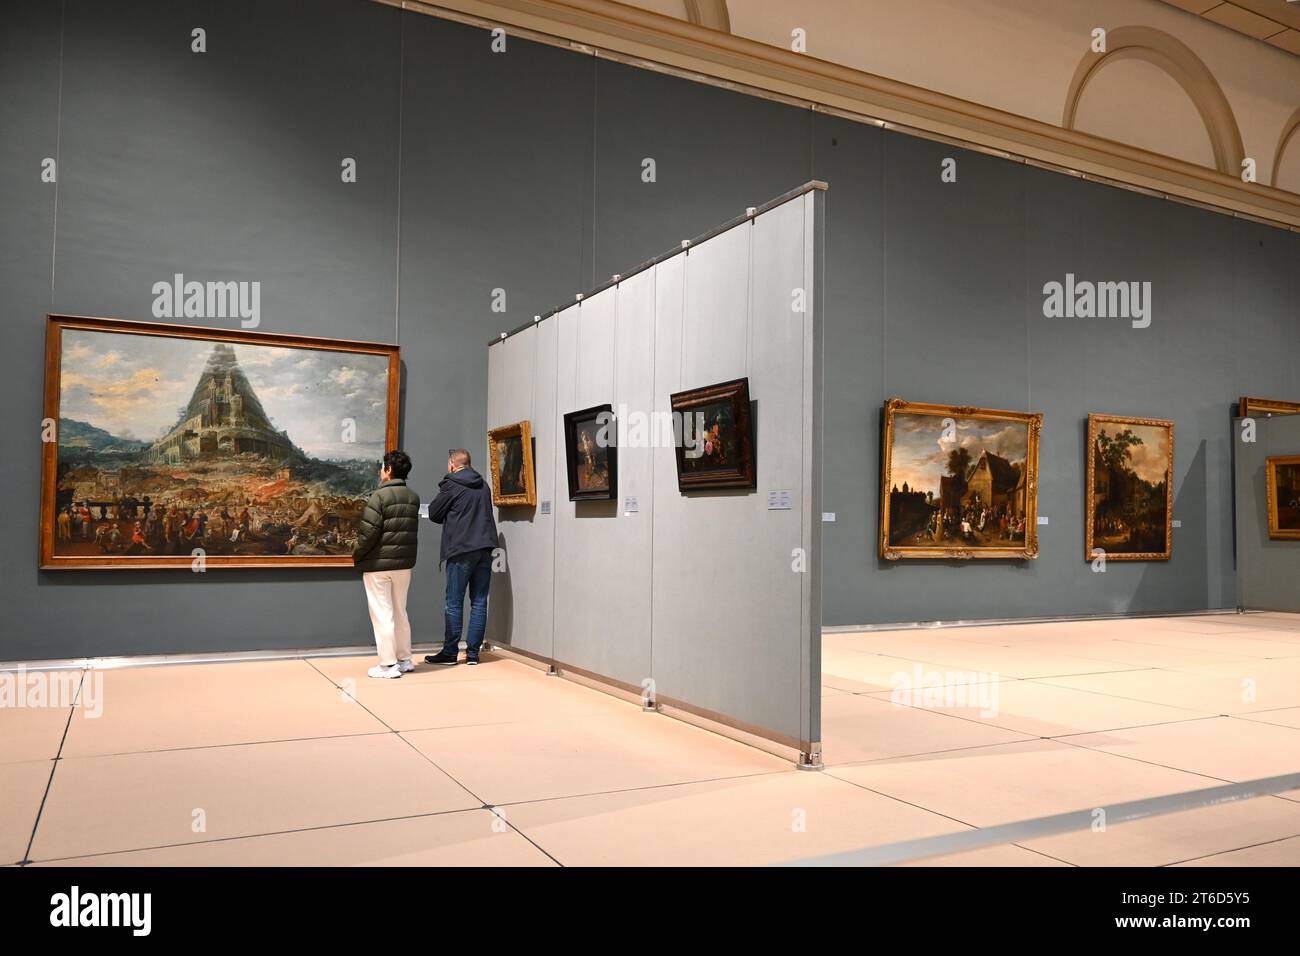 Personnes regardant des peintures dans les Musées royaux des Beaux-Arts de Belgique (Musées royaux des Beaux-Arts de Belgique) – Bruxelles Belgique – octobre 2023 Banque D'Images